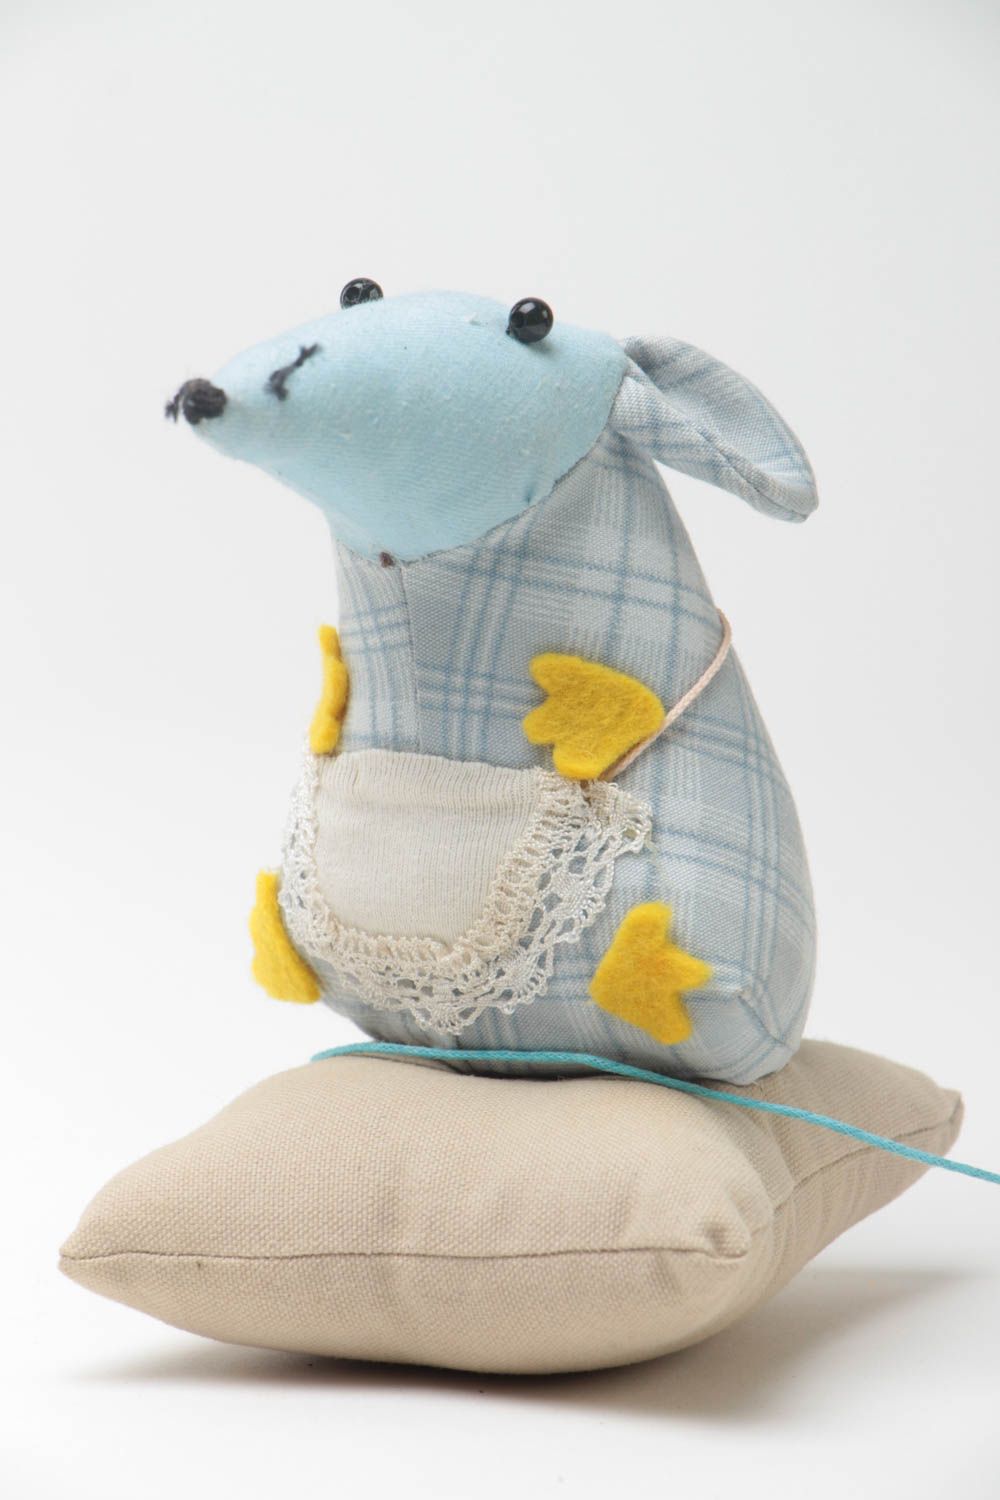 Мягкая игрушка крыска на подушке из ткани ручной работы милая в голубых тонах фото 3